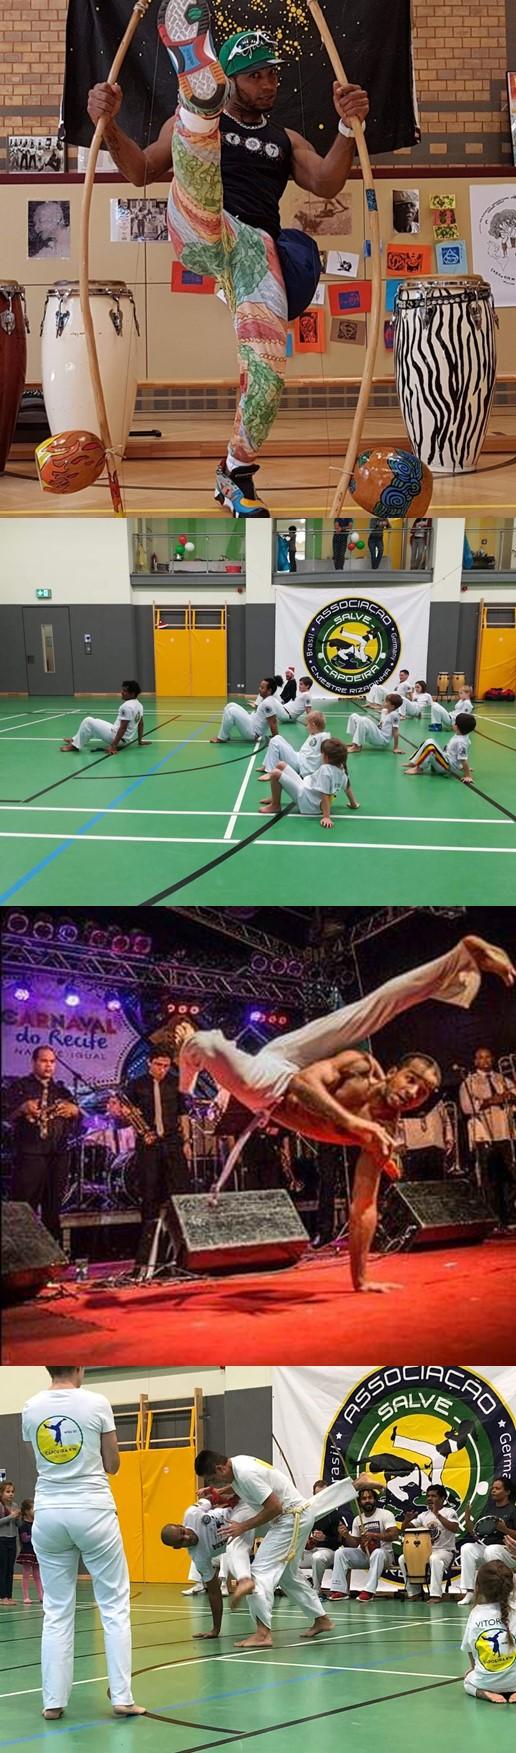 Capoeira für Kinder und Erwachsene Wann: immer donnerstags, 18:00-19:00 Uhr 19:00-20:00 Uhr Wo:  Bei Interesse melden Sie sich bitte